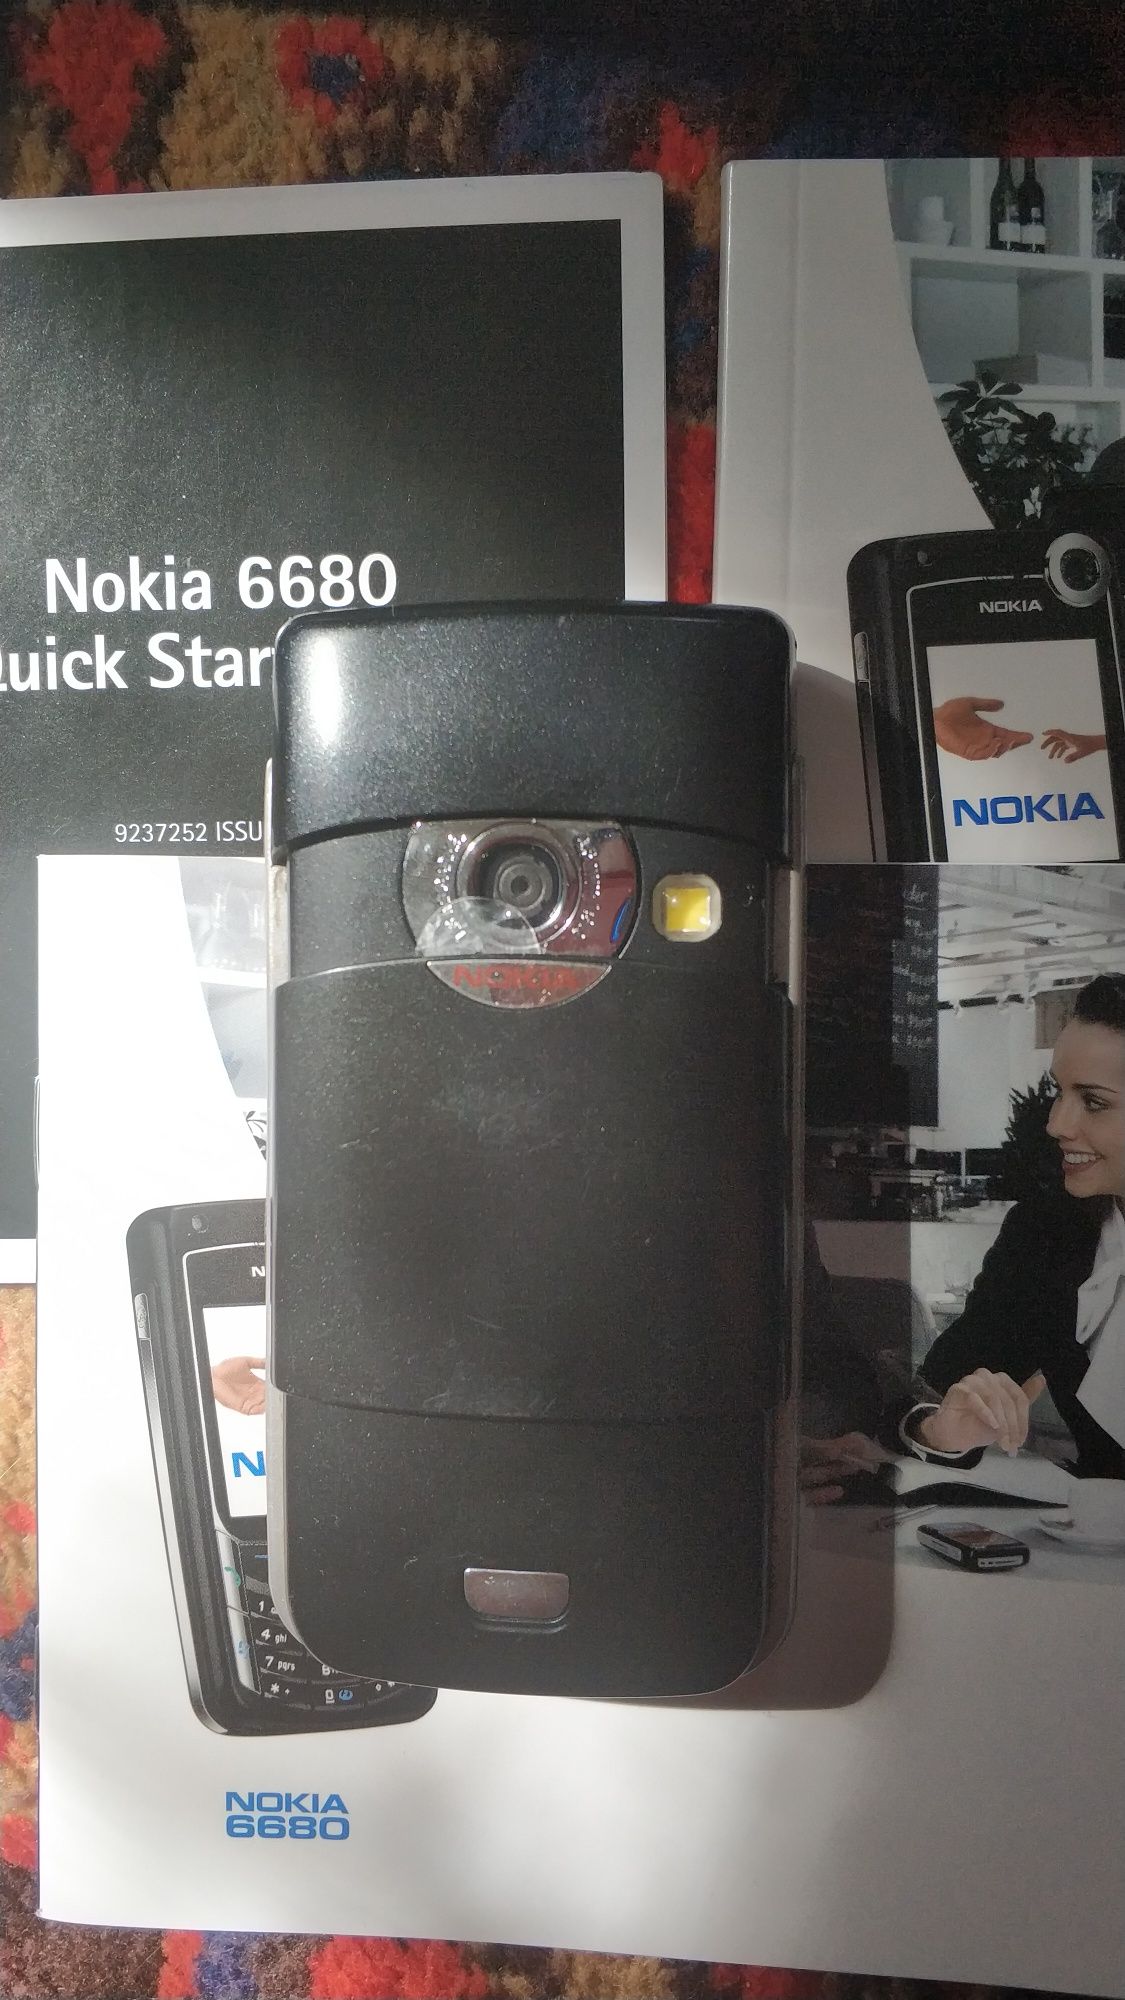 Nokia 6680 black edition